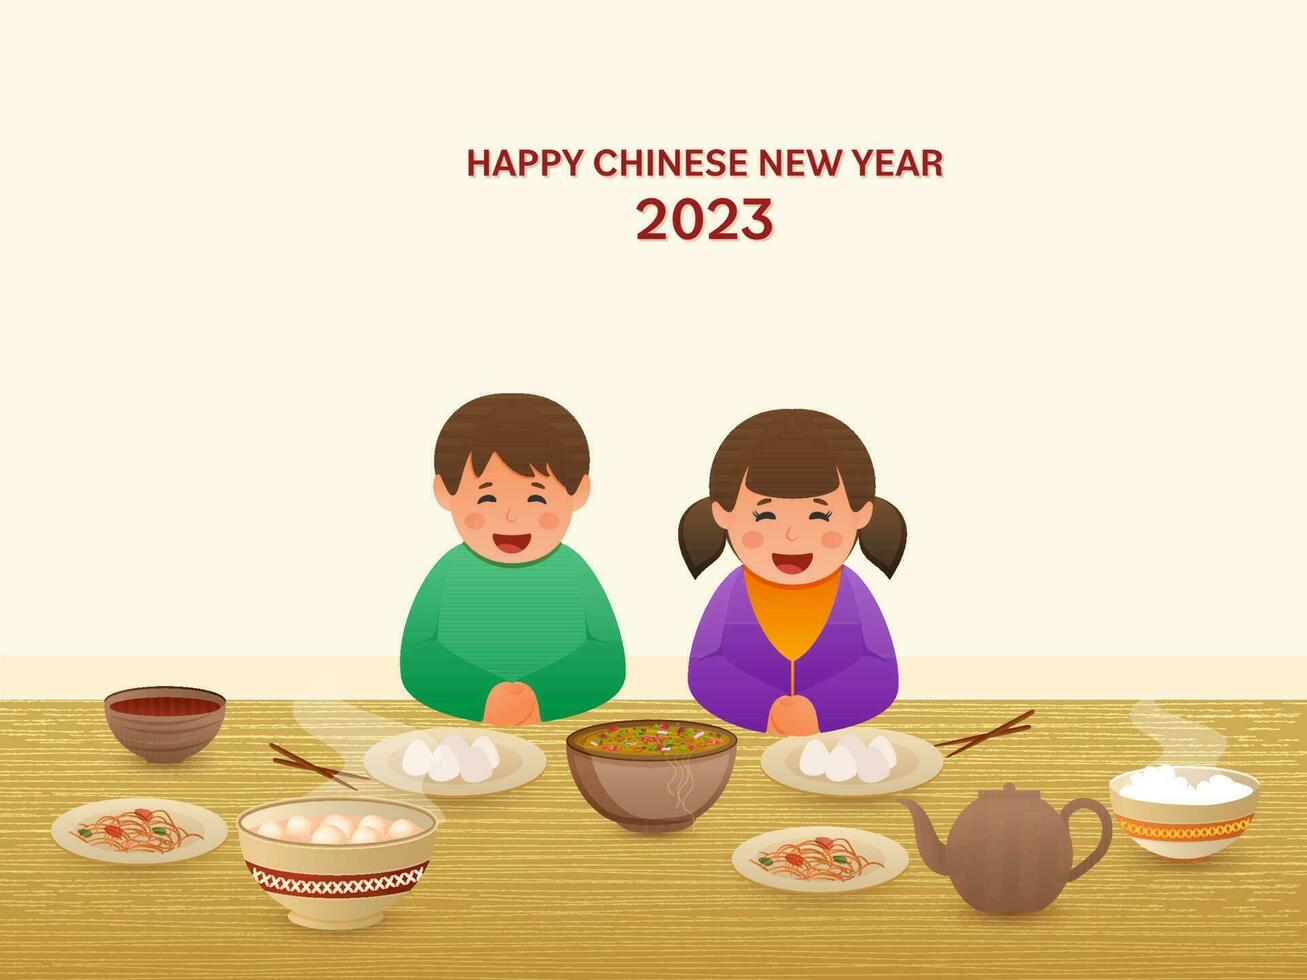 alegre chinês sentado dentro frente do delicioso refeições em a ocasião do feliz chinês Novo ano 2023. vetor